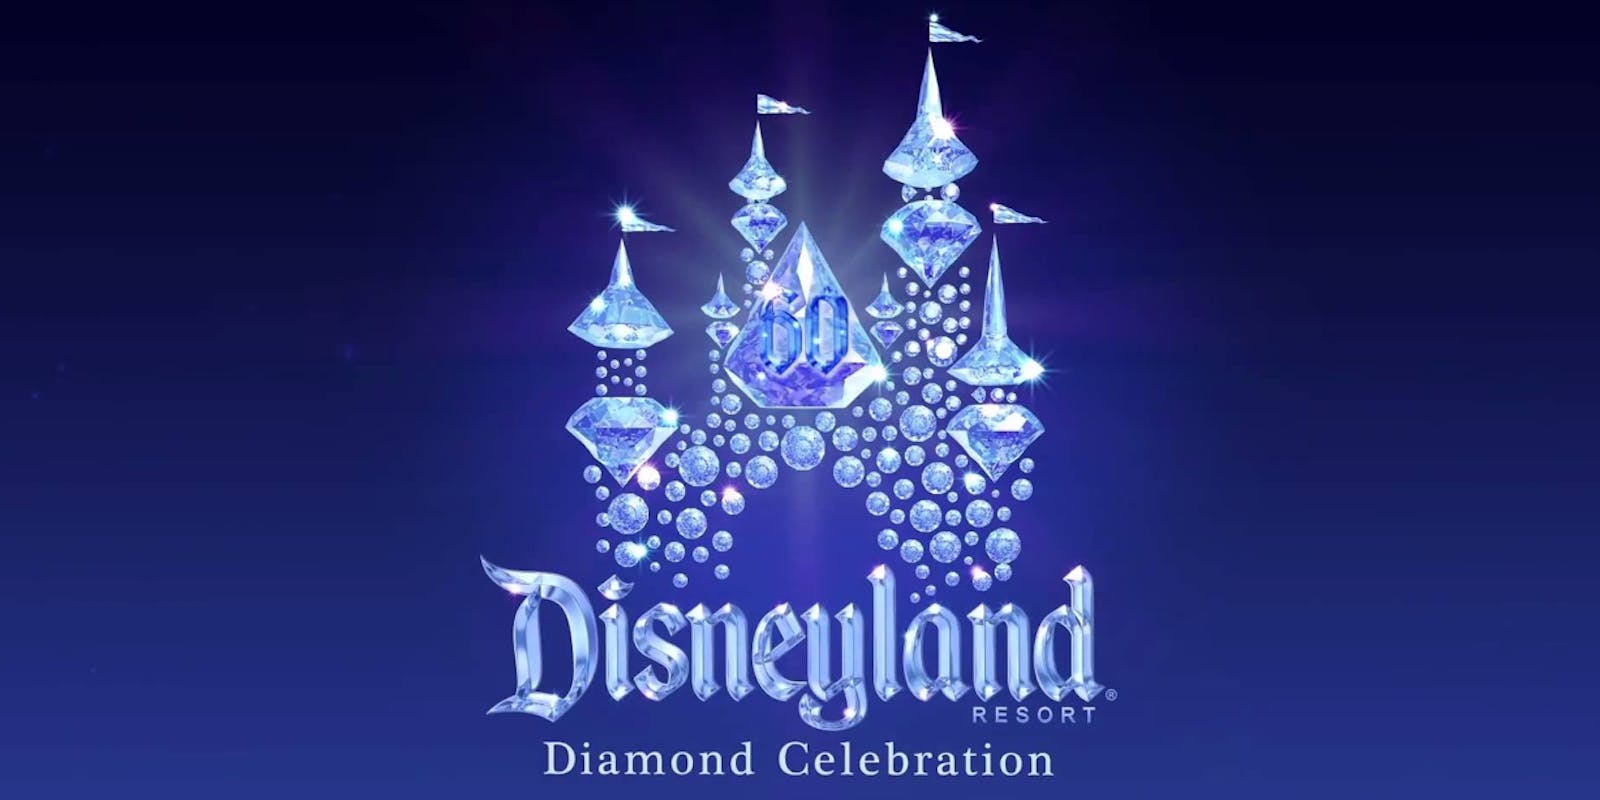 Venez participer à la Diamond Celebration de Disneyland Californie